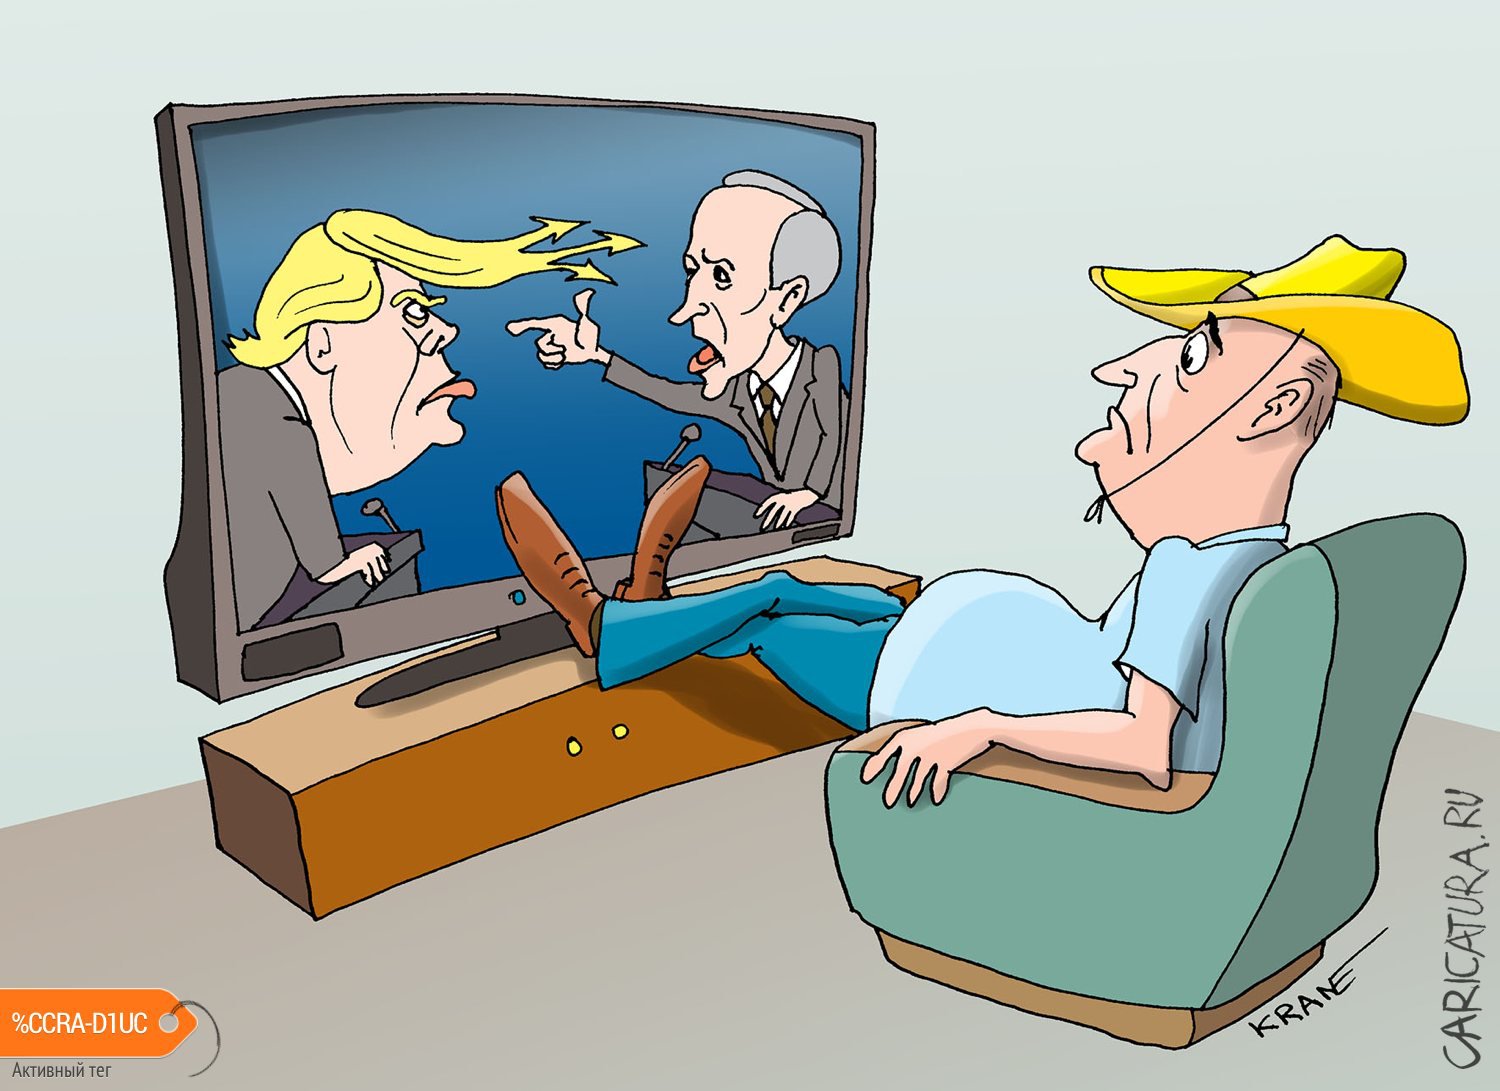 Карикатура "К одному есть претензии, у другого не все дома", Евгений Кран